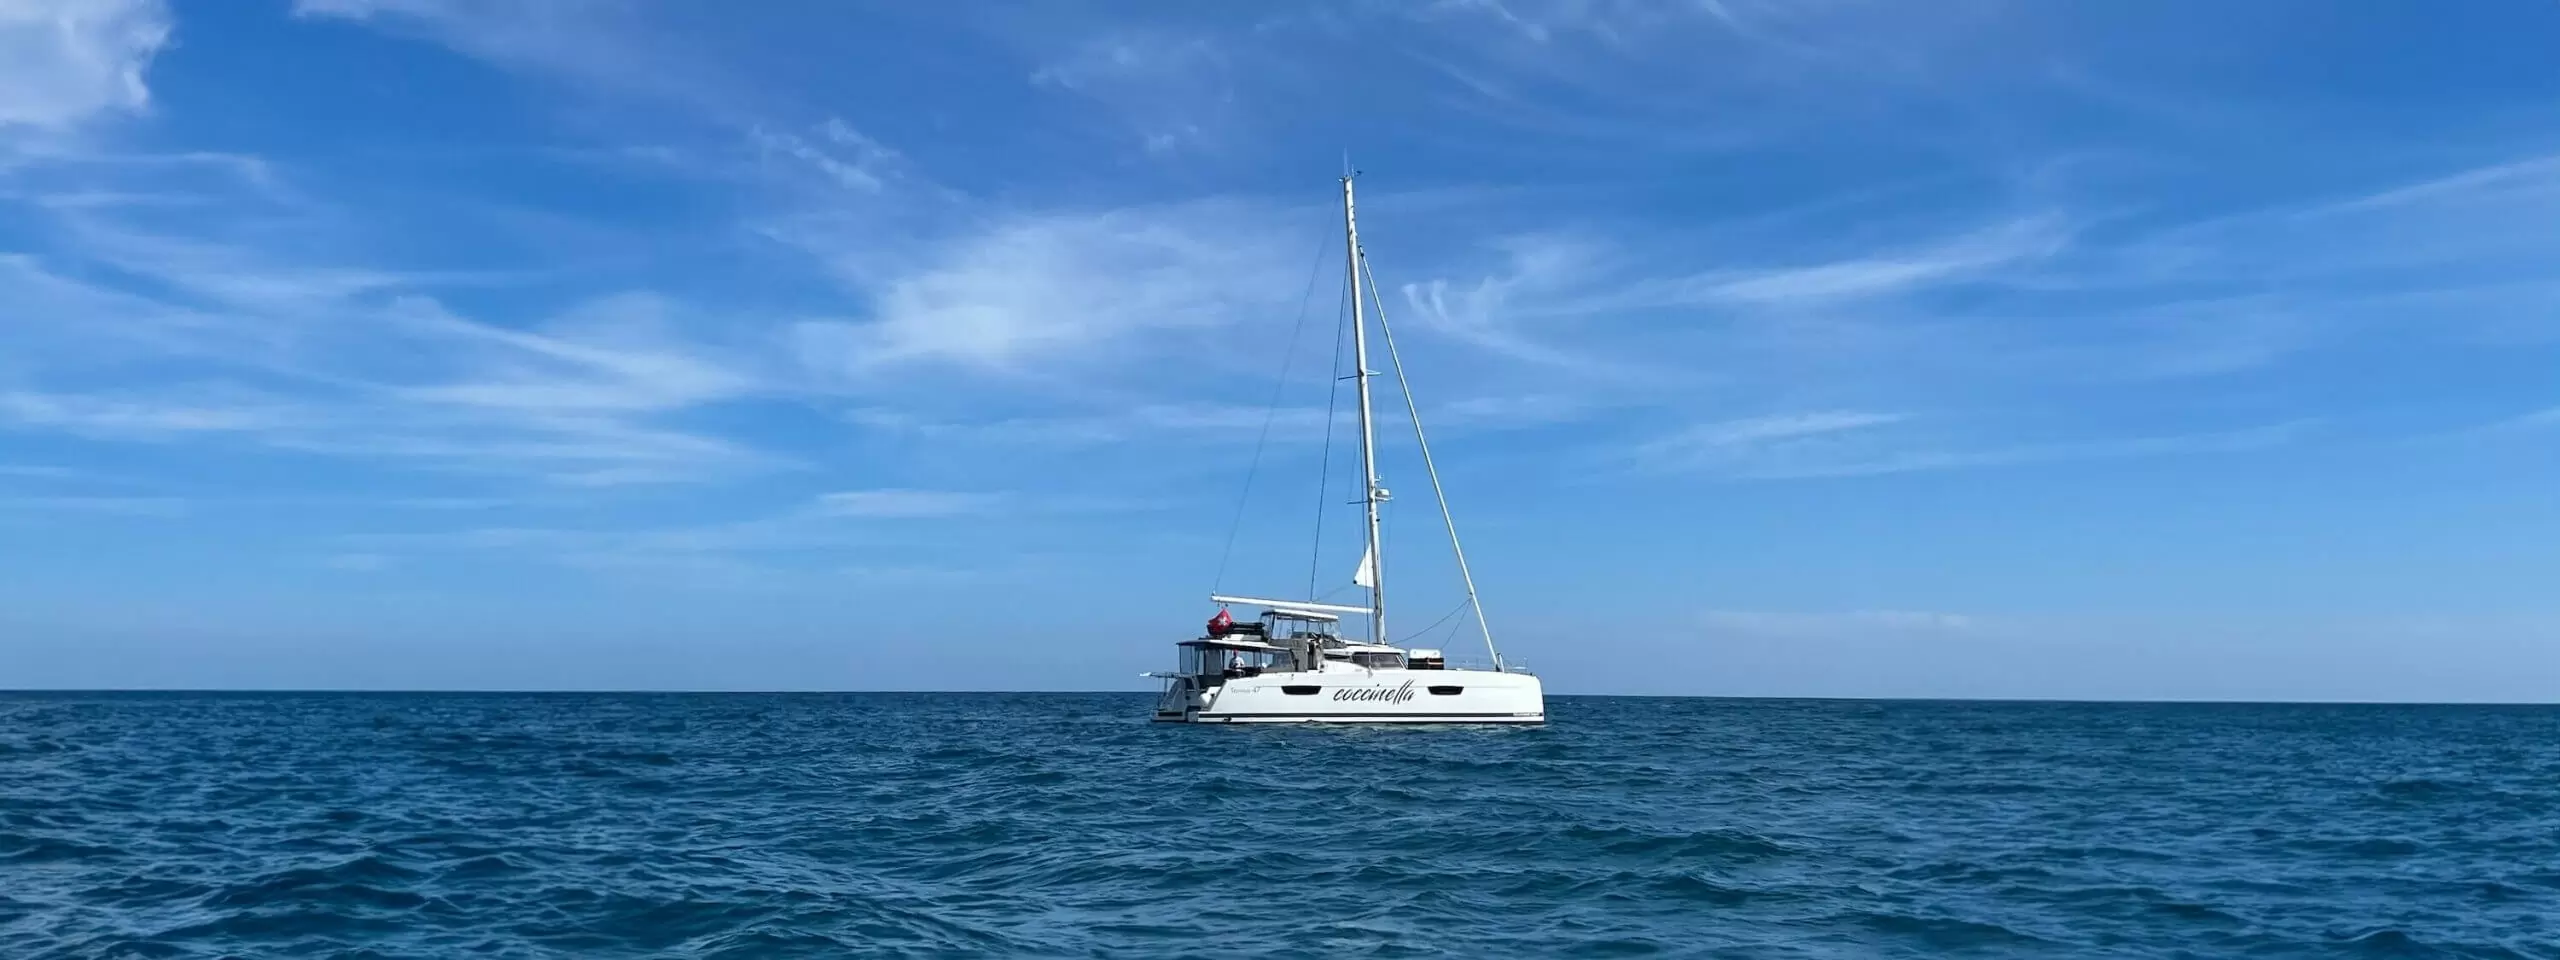 Coccinella Yacht auf hoher See gross